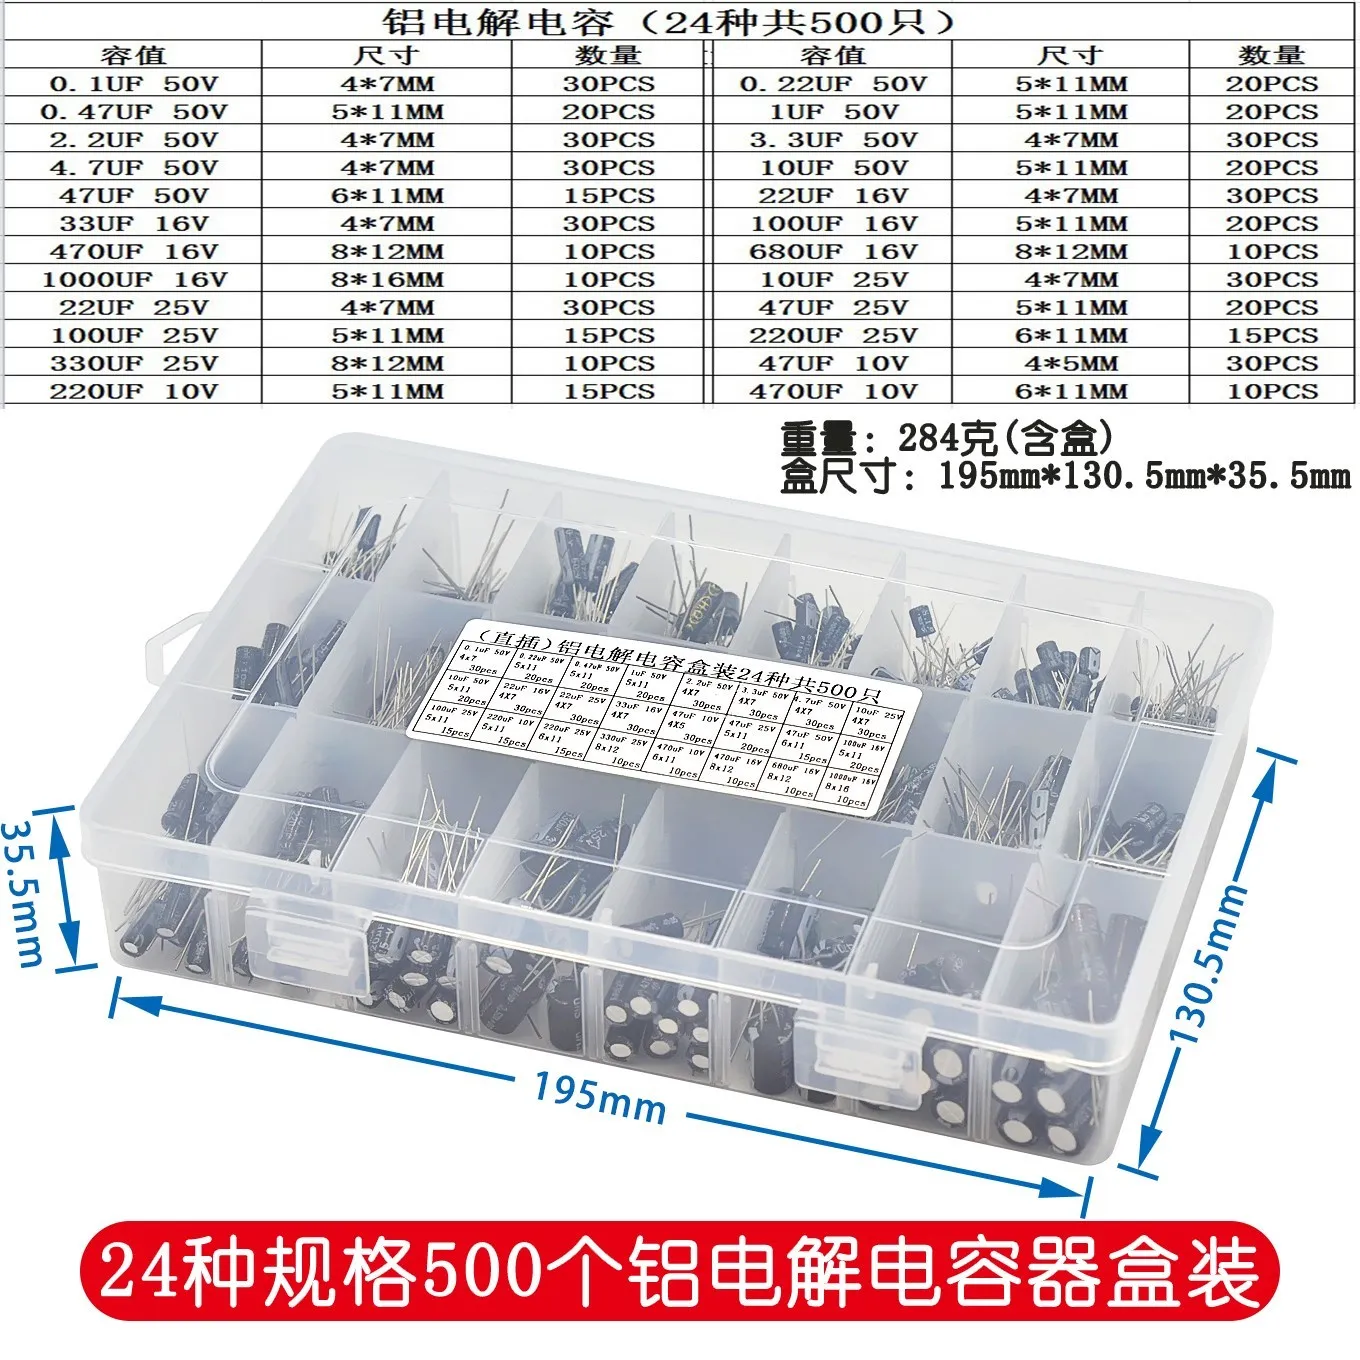 500Pcs/lot 0.1UF-1000UF 24Values Aluminum 16-50V Mix Electrolytic Capacitor Assorted Kit And Storage Box